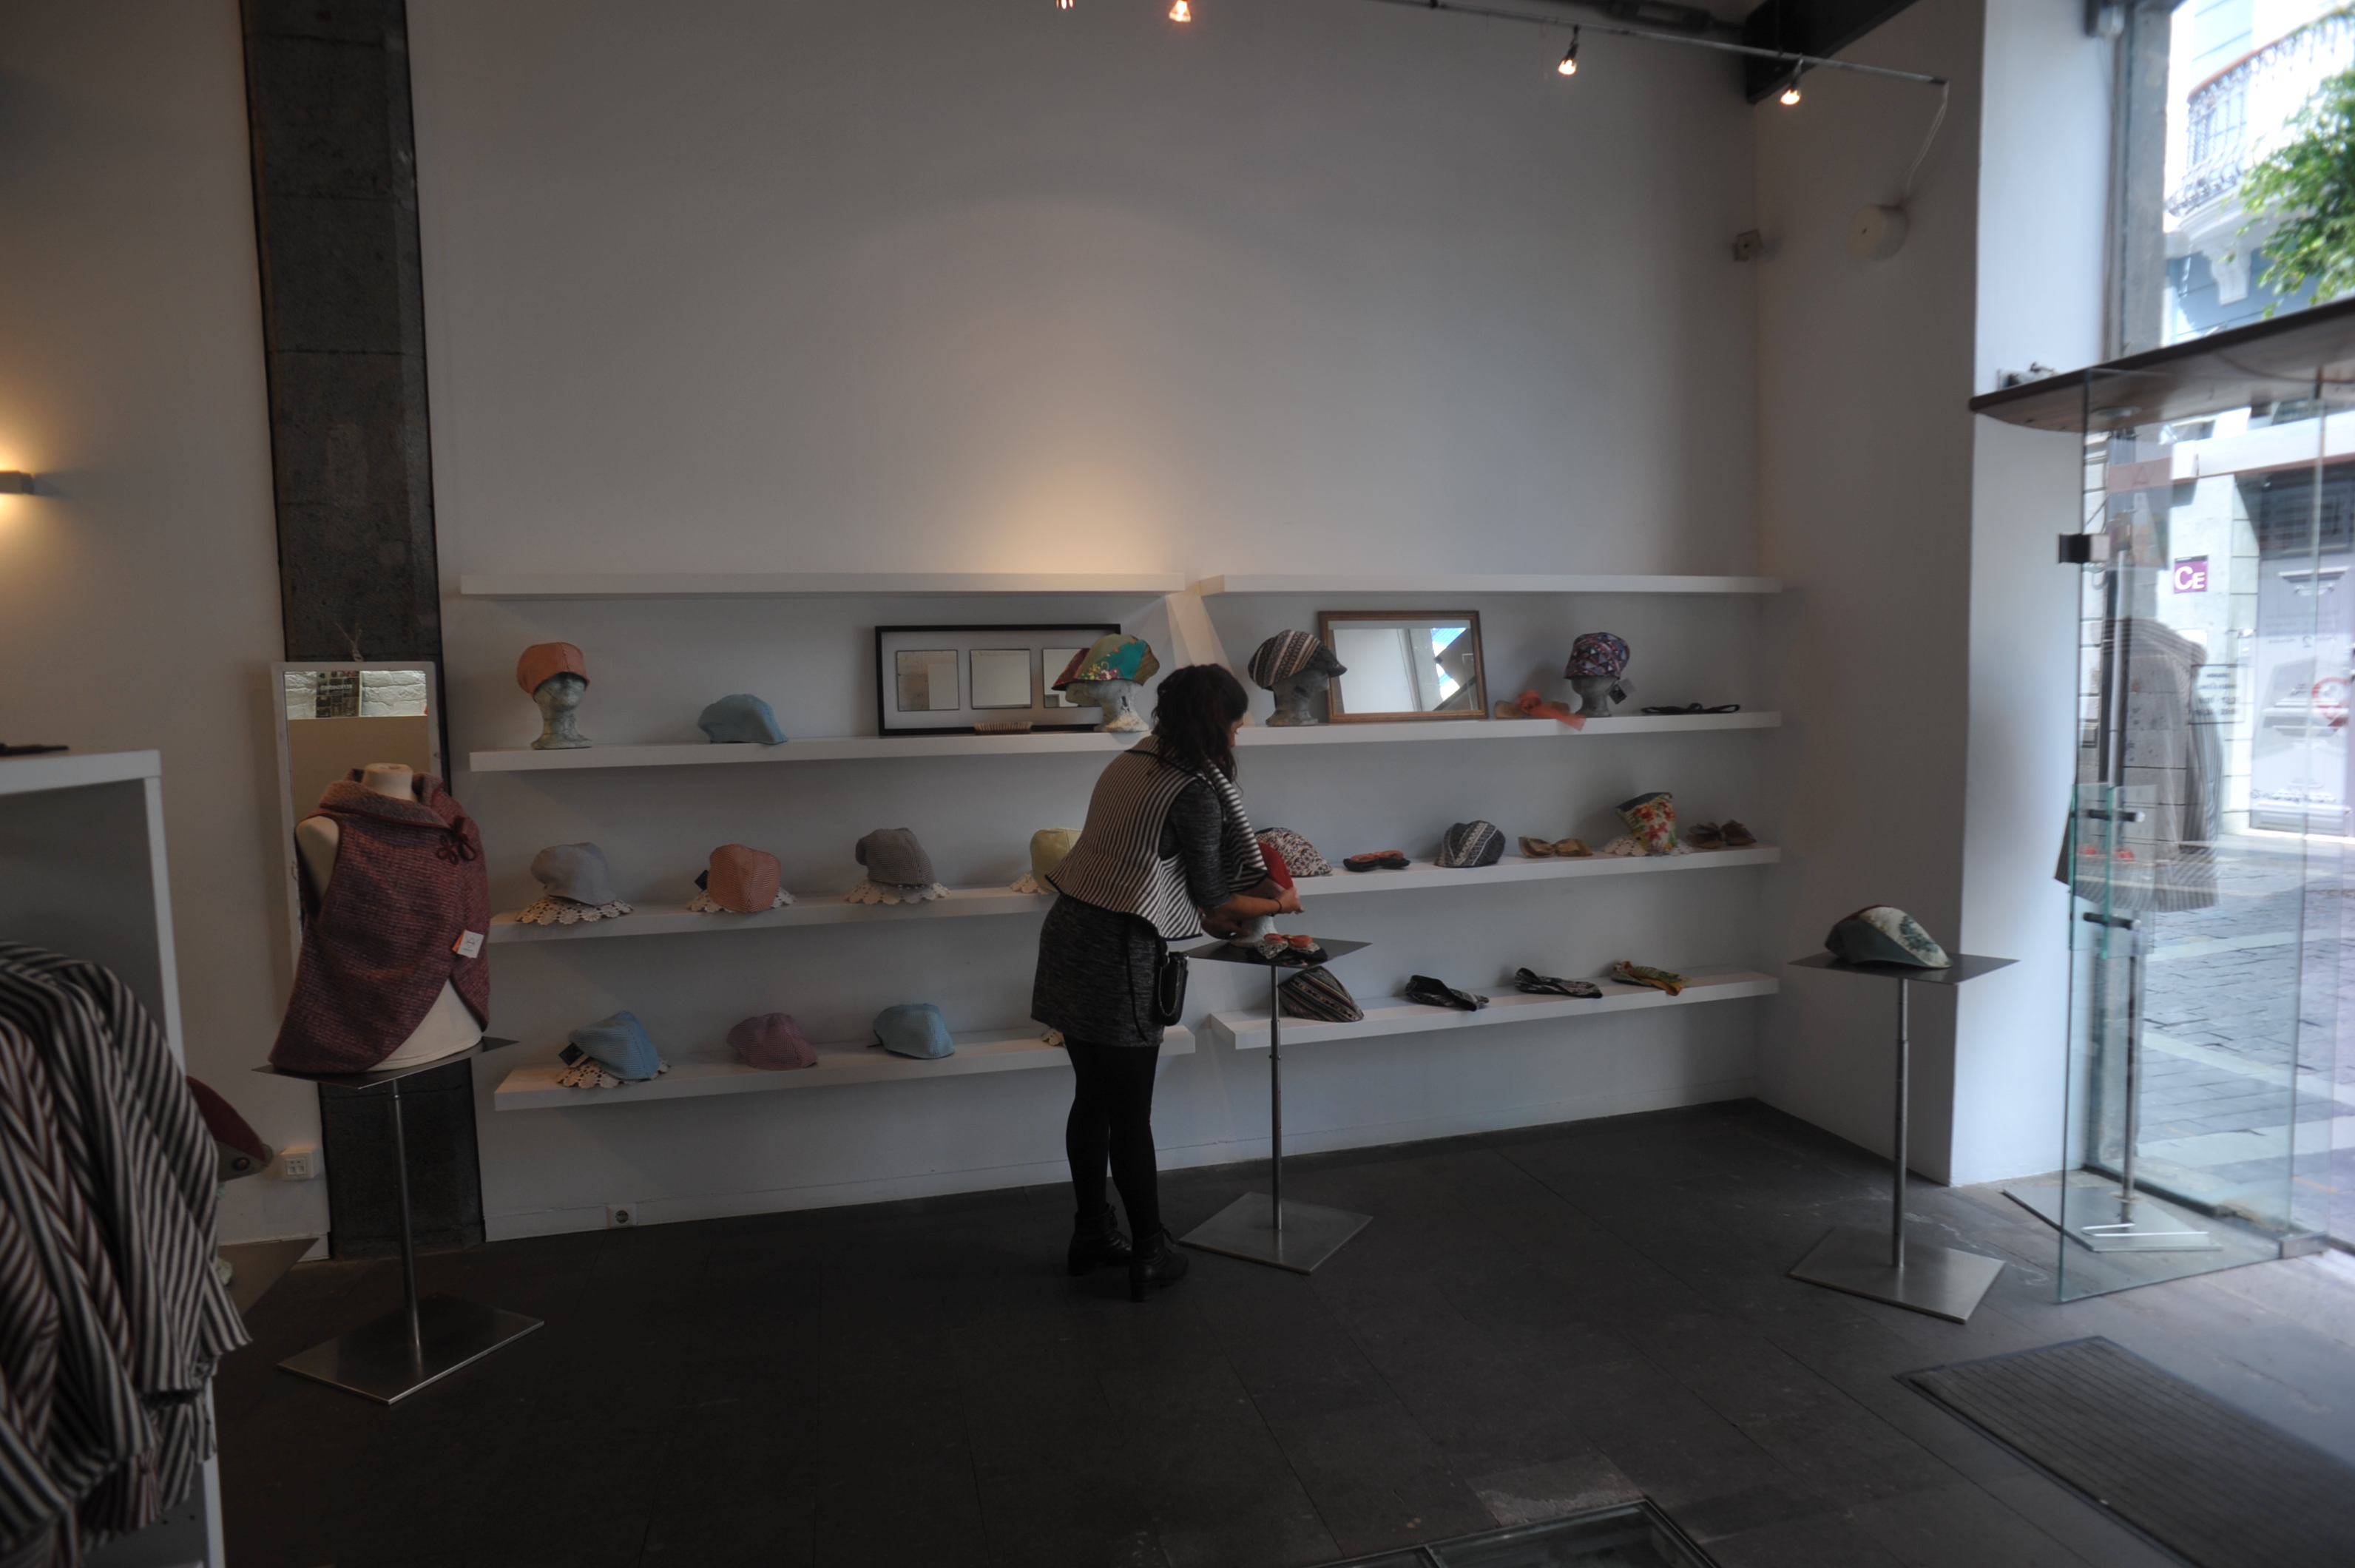 La artesana Arantxa Arenas abre el calendario de exposiciones de la Sala de la Fedac del Cabildo con gorras y originales chambergos transformables